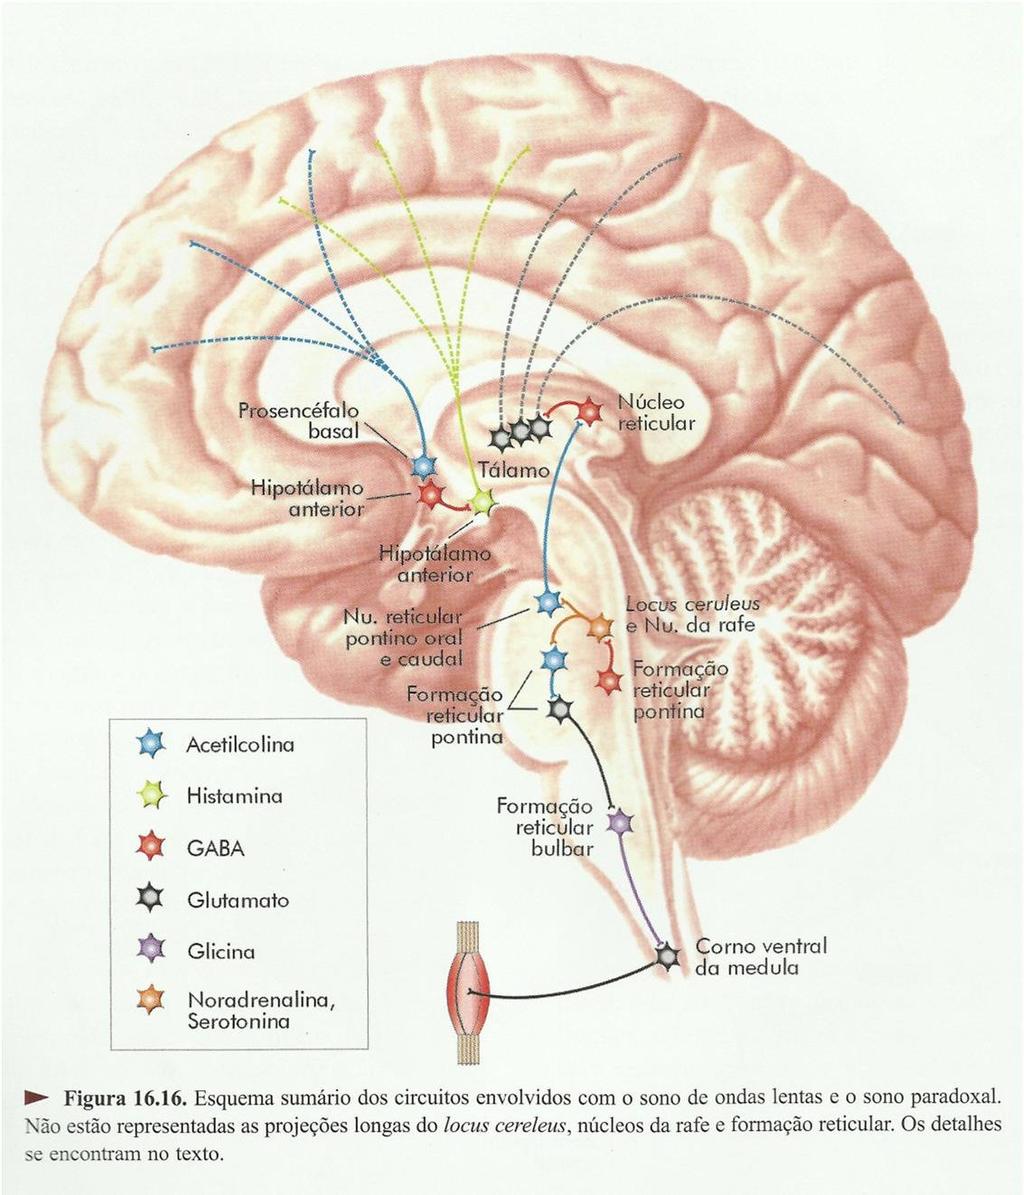 Fisiologia do Sono Inicia pelo desligamento das vias ativadoras histaminérgicas (inibição por neurônios GABAergicos), inibição de motoneurônios medulares (ciclo respiratório homogêneo), a diminuição